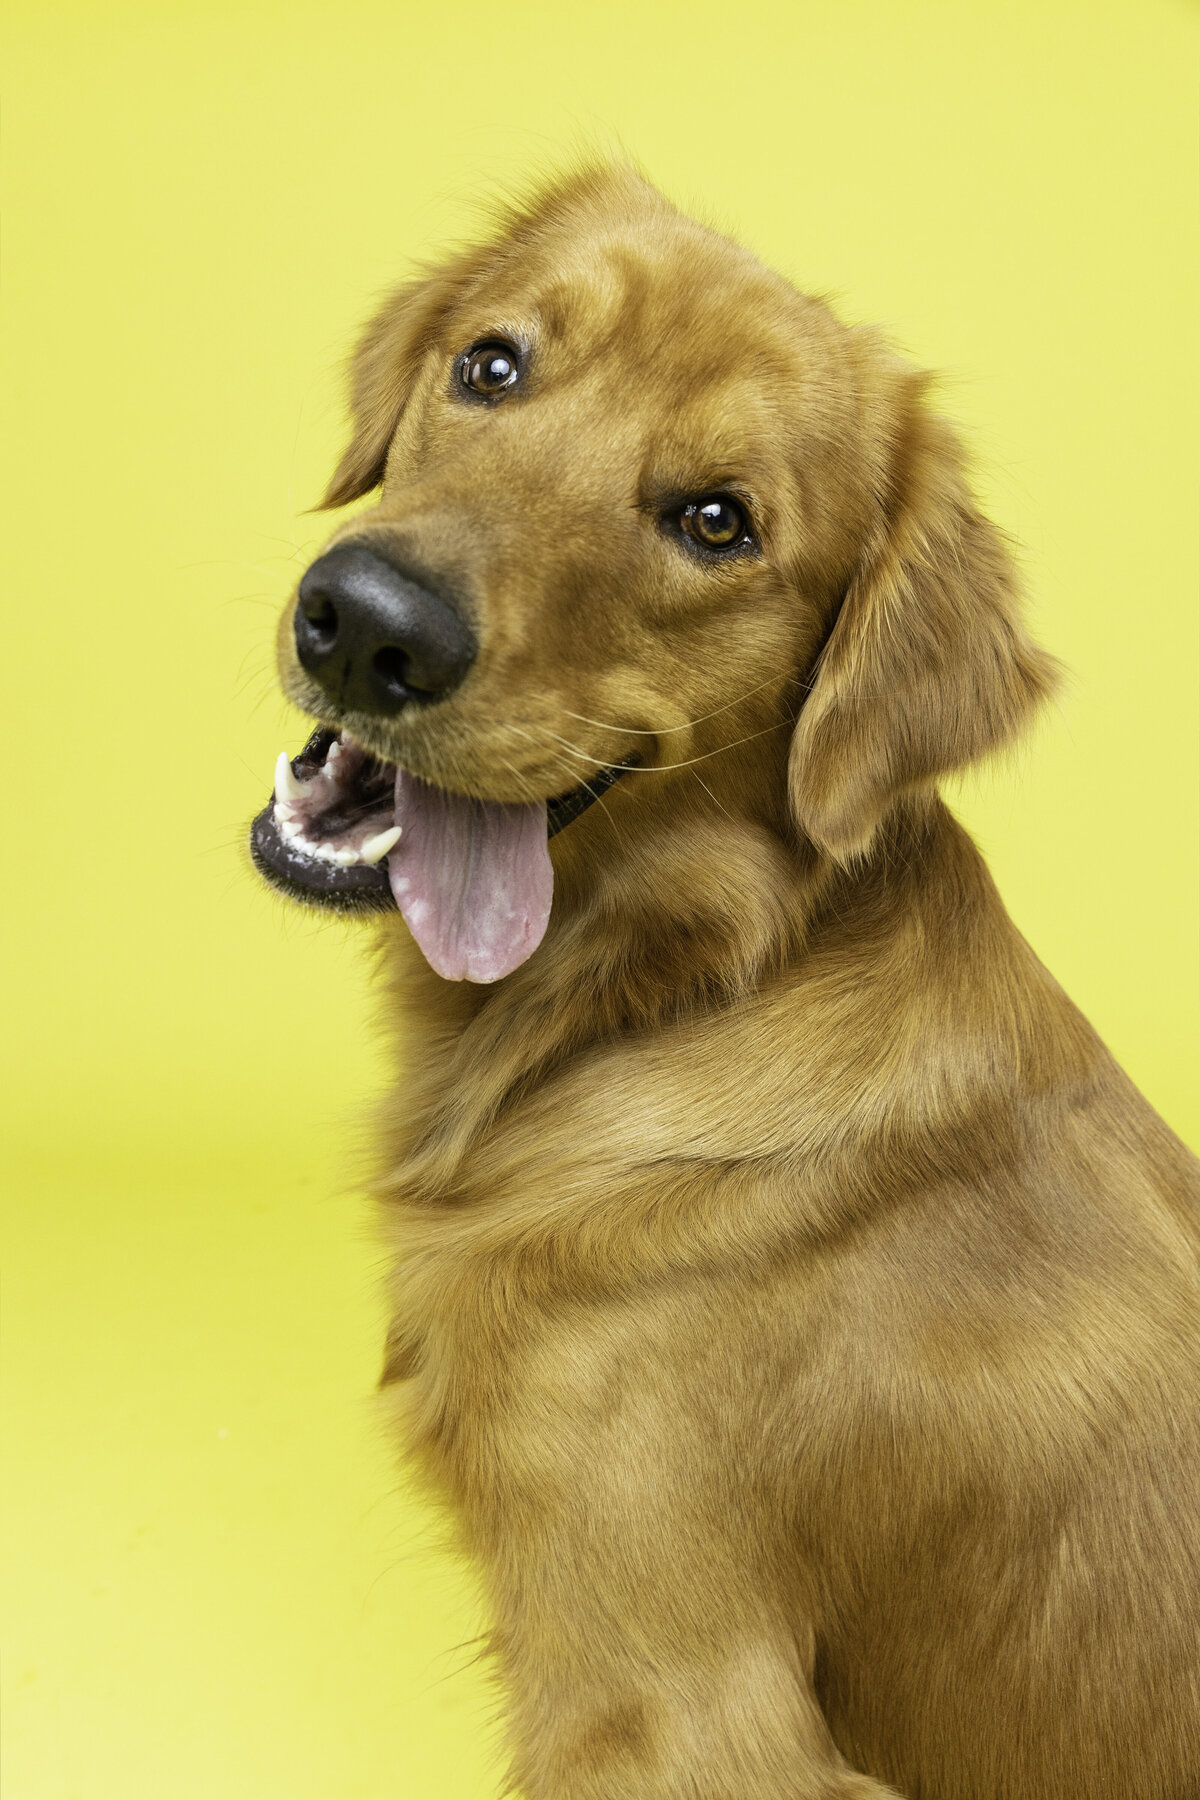 Brinkley 2- The Beloved Pup